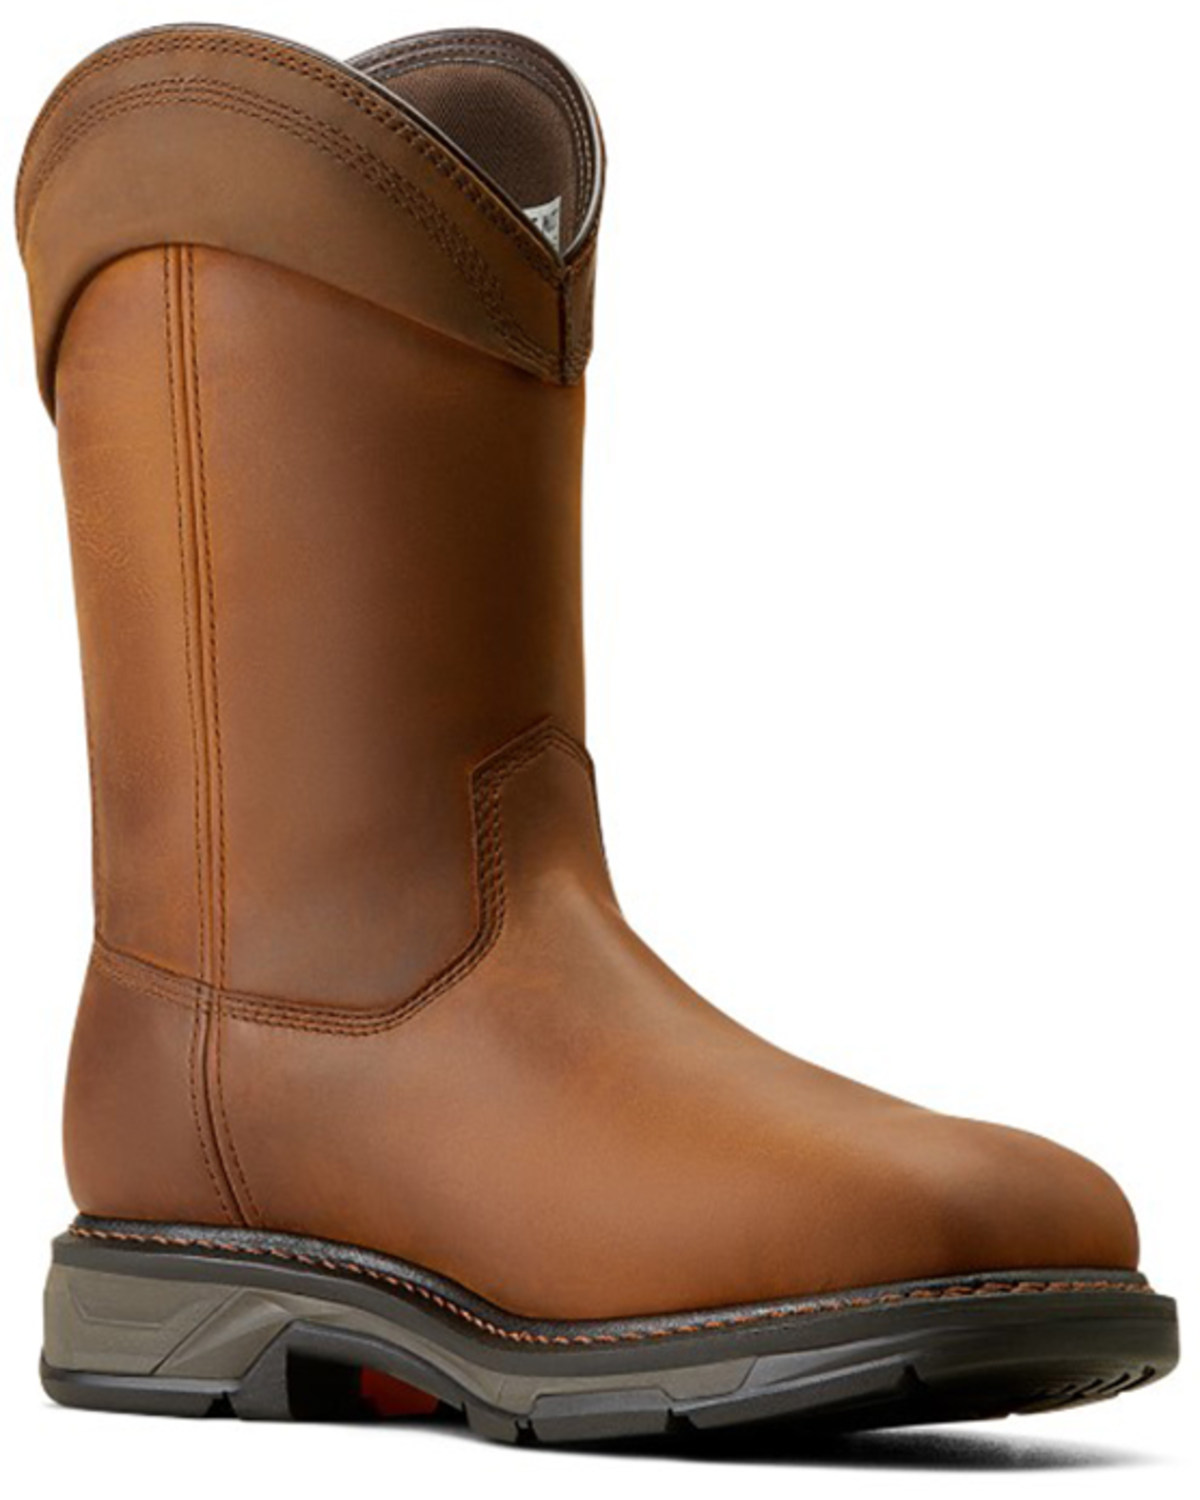 Ariat Men's WorkHog® XT Waterproof Wellington Work Boots - Carbon Toe